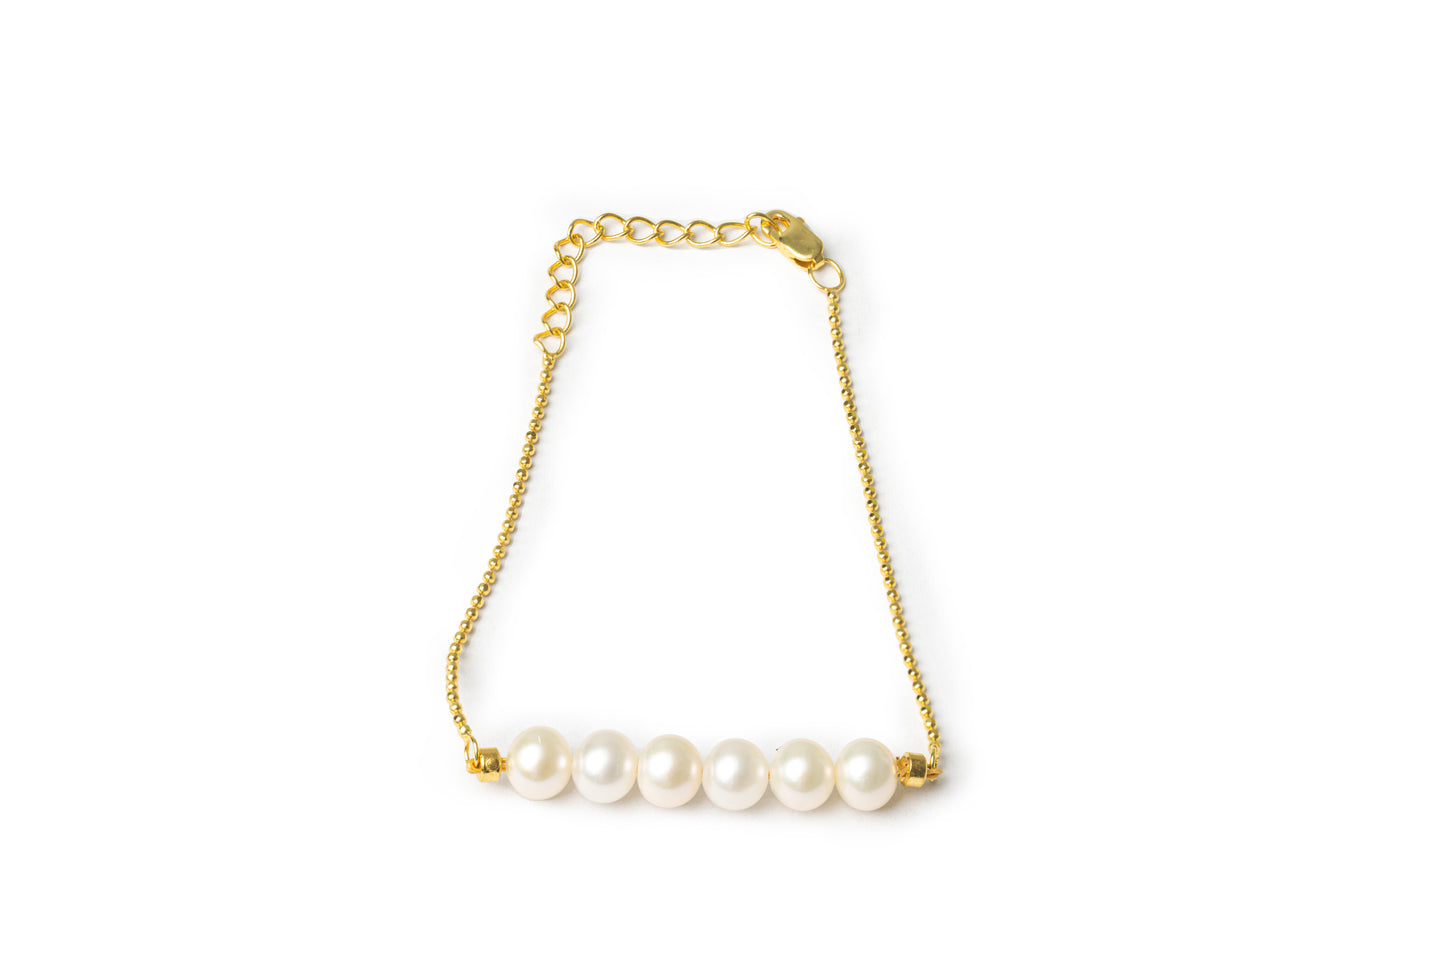 Multiple Pearl Bracelet  - Golden Freshwater Pearls Bracelet for Women (freshwater pearls,14K gold )